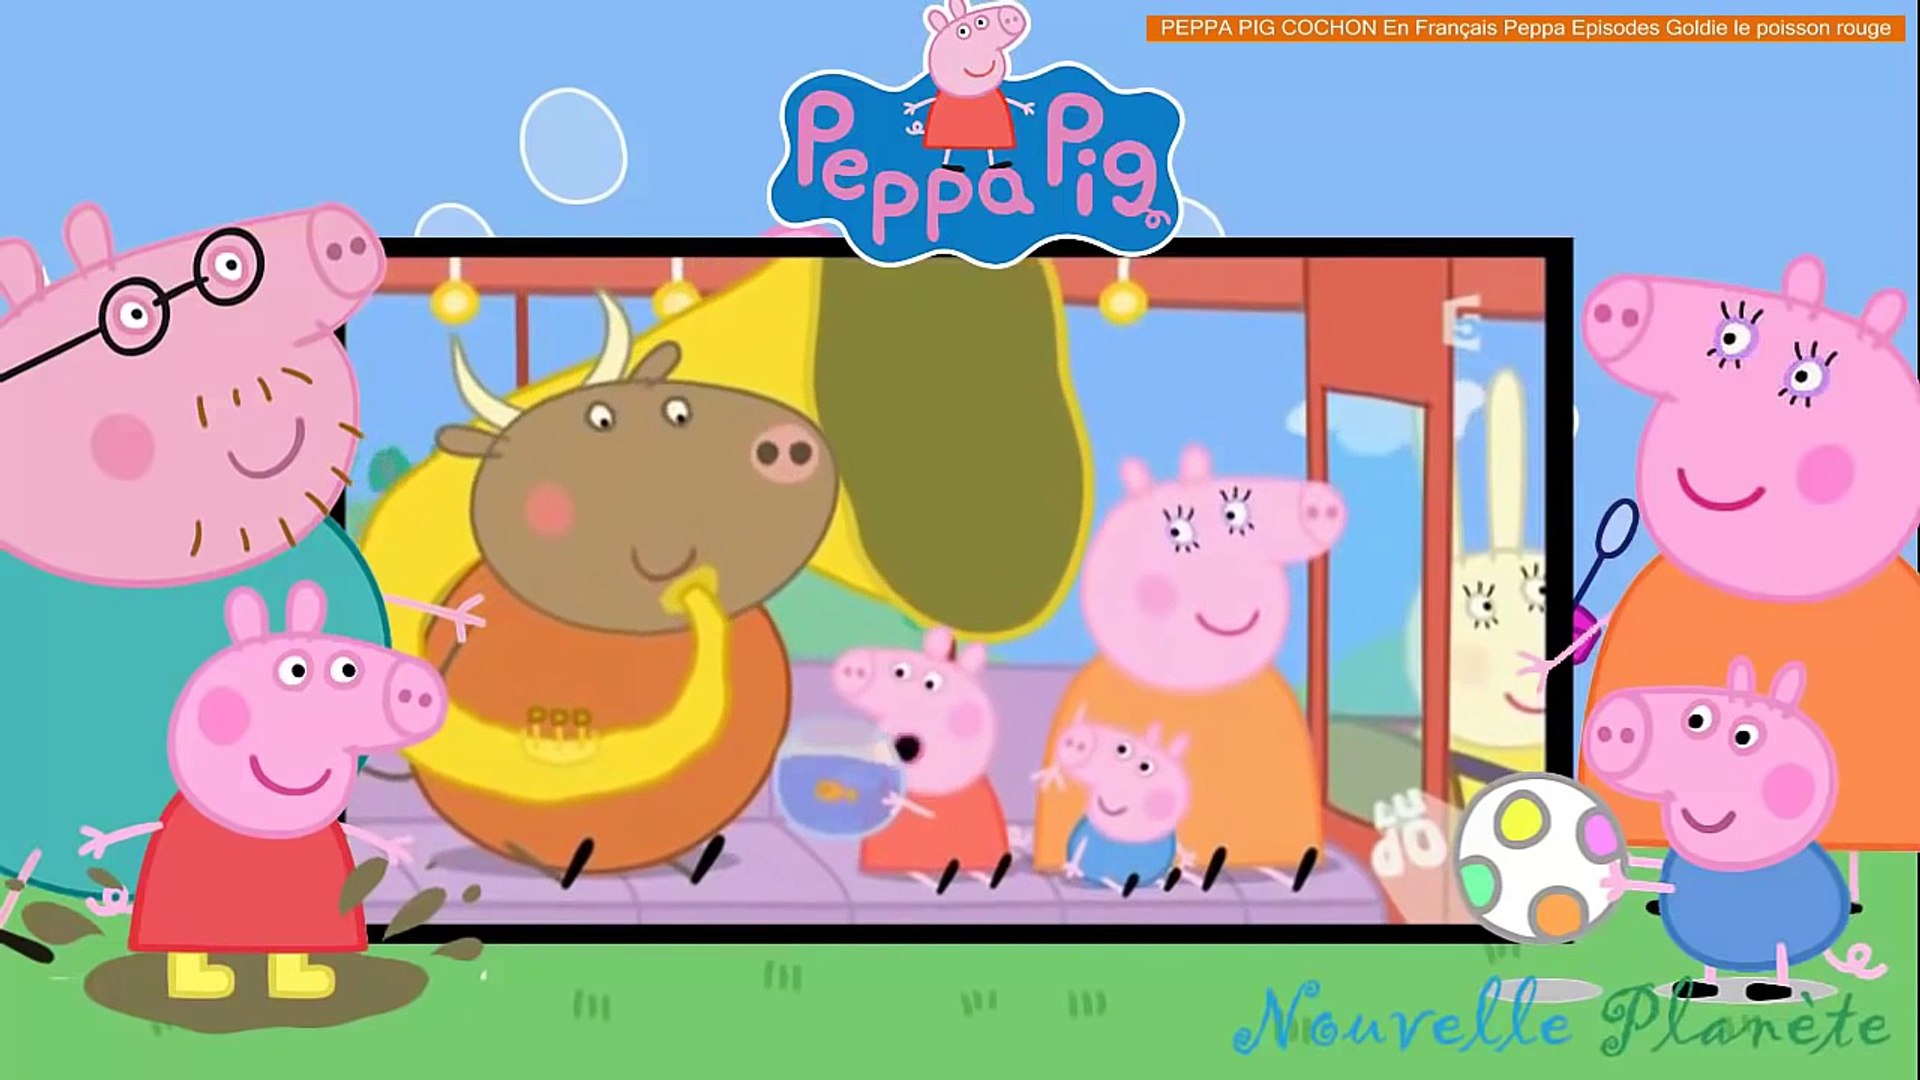 PEPPA PIG COCHON En Français Peppa Episodes Goldie le poisson rouge - video  Dailymotion